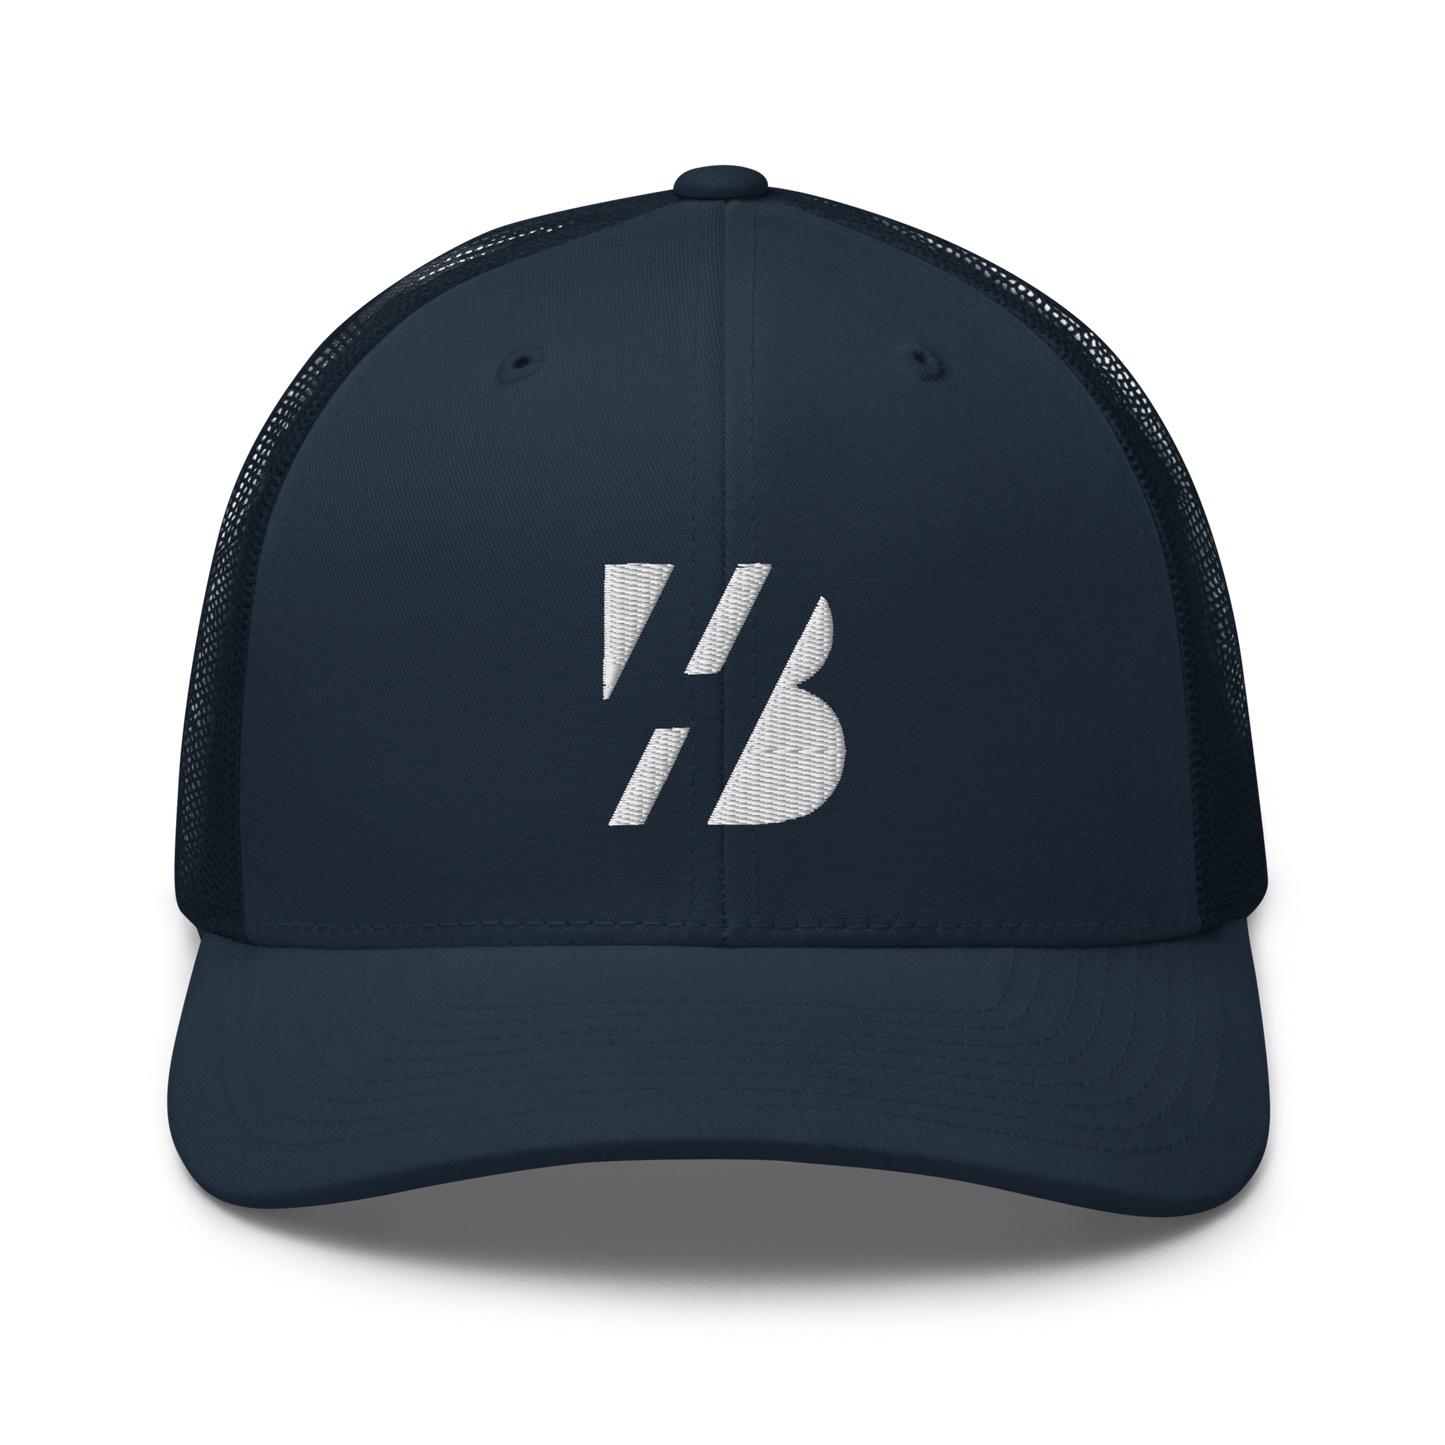 HORVATH TRUCKER CAP